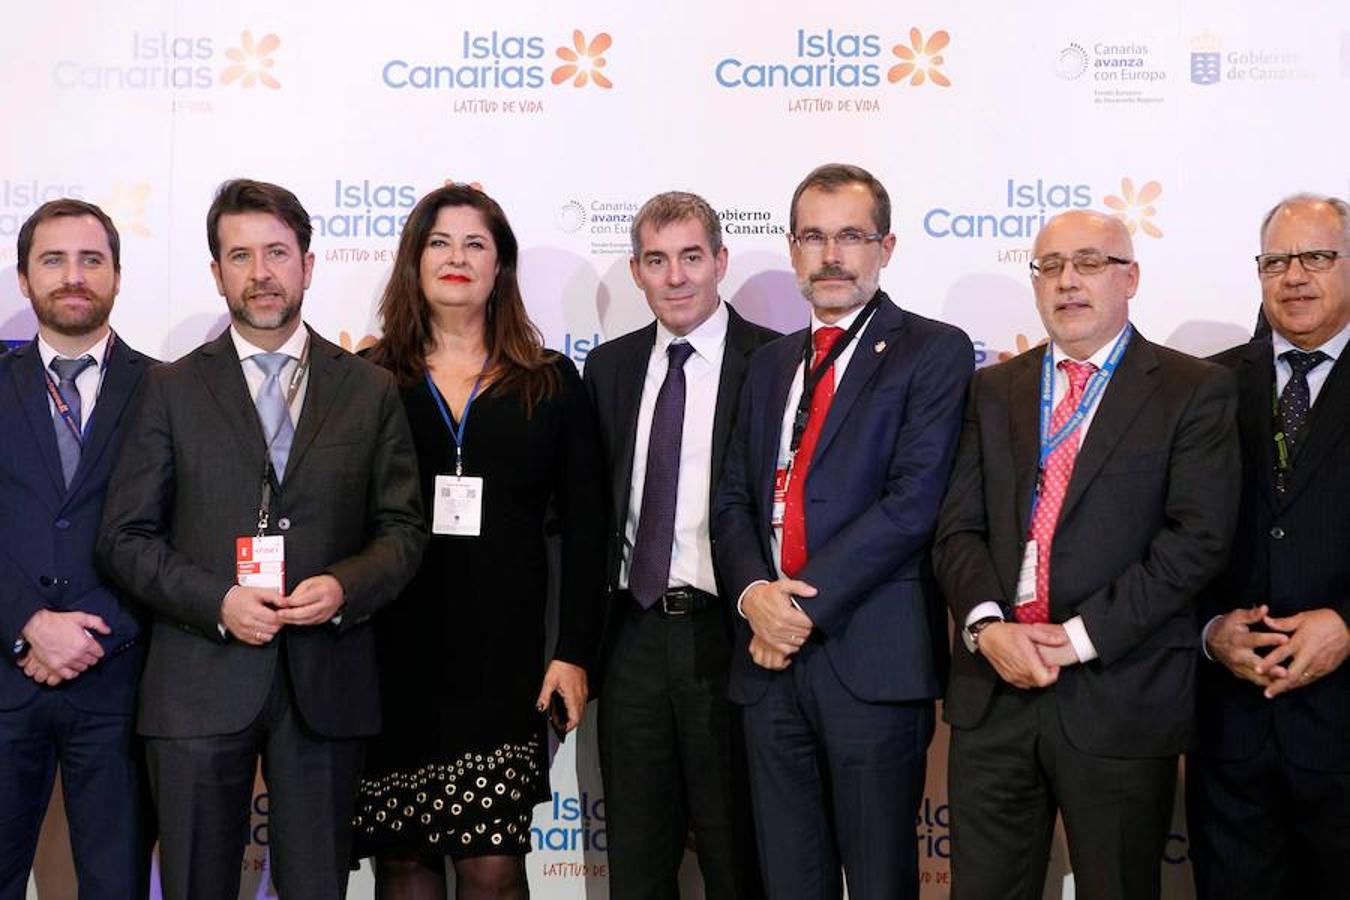 El Presidente de Canarias Fernando Clavijo (c), durante la presentación del stand de las Islas Canarias, en la feria internacional de turismo FITUR 2018, que se celebra en Madrid. 